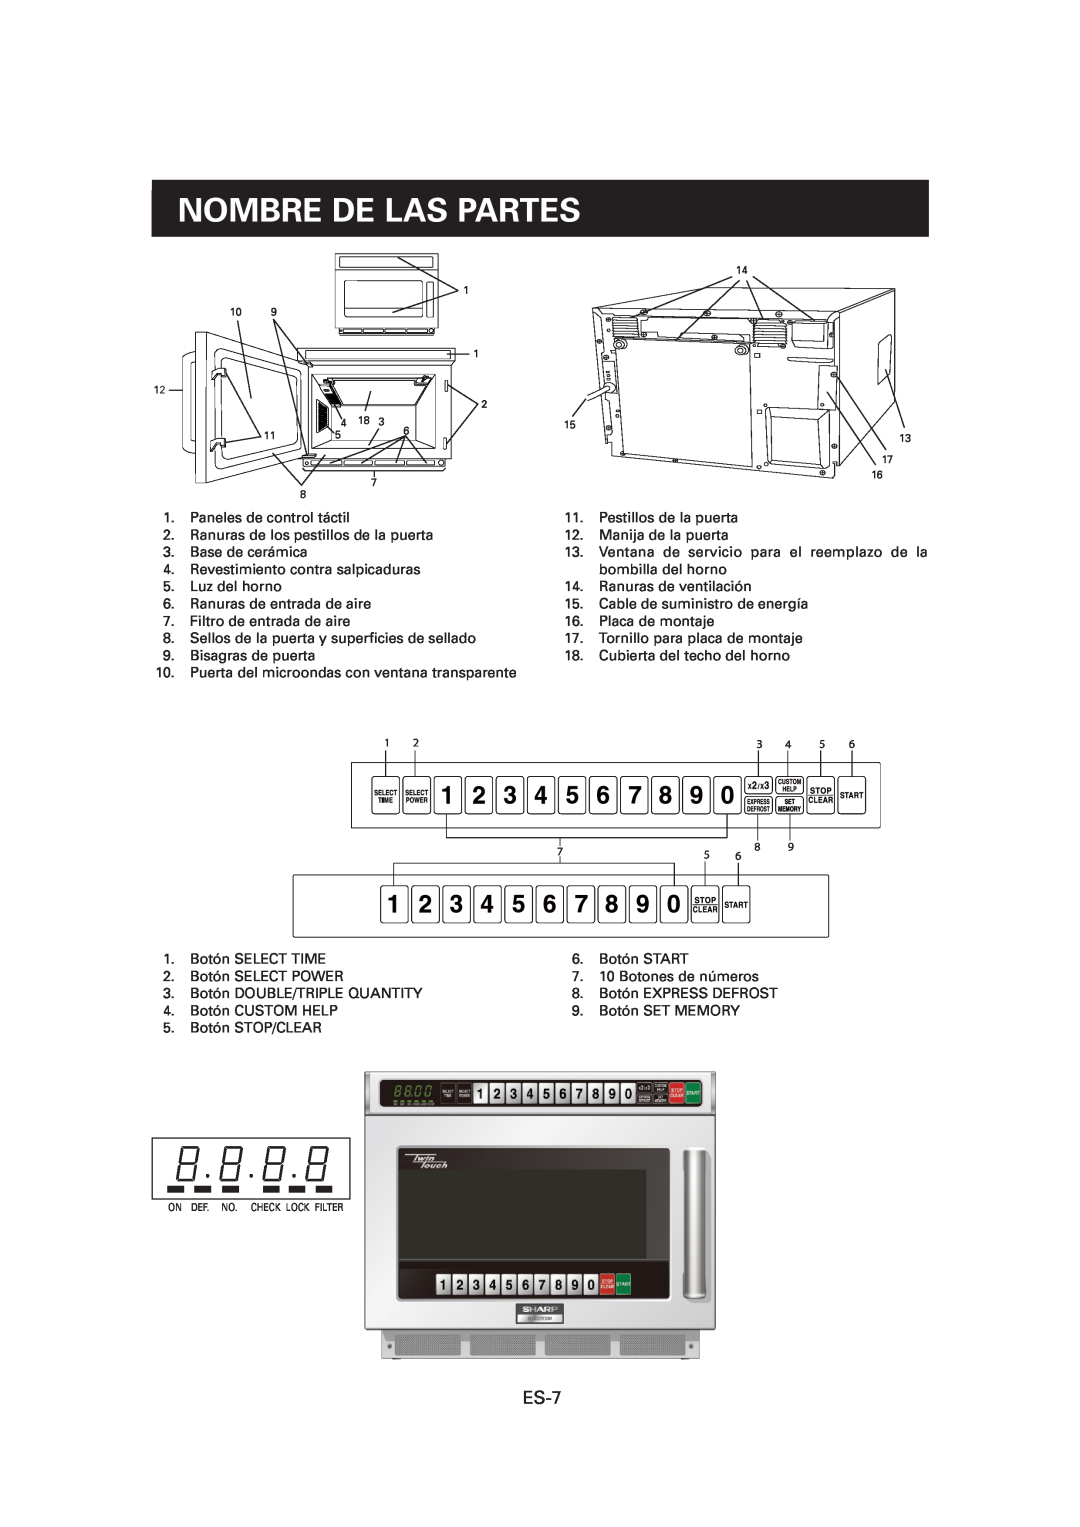 Sharp CD2200M, R-CD1200M, CD1800M operation manual Nombre De Las Partes, ES-7 